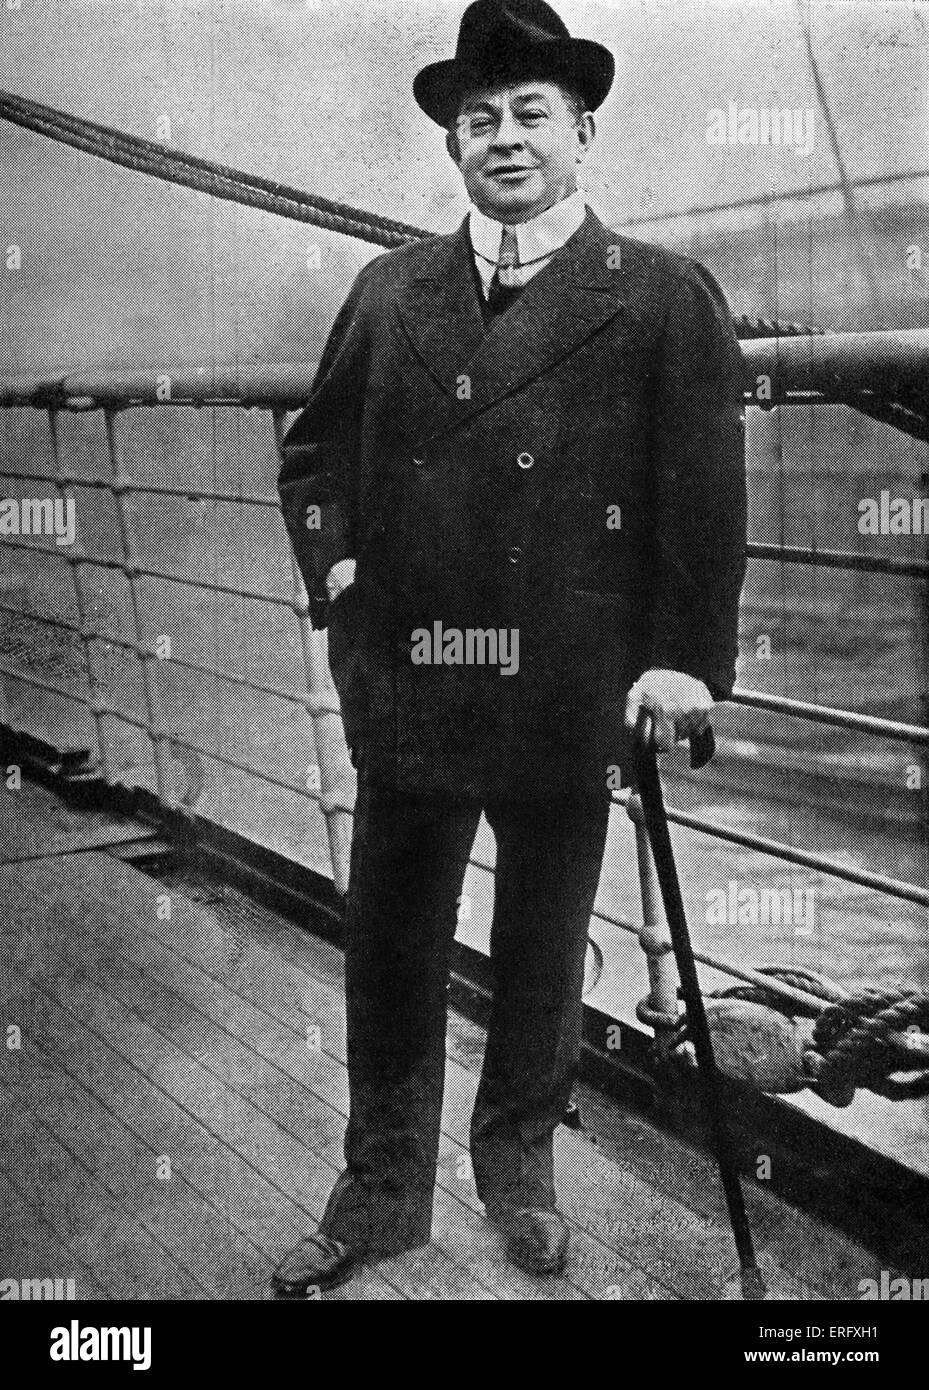 Charles Frohman, letzte Foto vor seinem Tod an der Versenkung der RMS Lusitania, einen britischen Luxus-Ozeandampfer. Am 7. Mai 1915 wurde die Lusitania durch deutsche u-Boot u-20 torpediert. CF: Amerikanische Theaterproduzenten, 15. Juli 1856 – 7. Mai 1915. Stockfoto